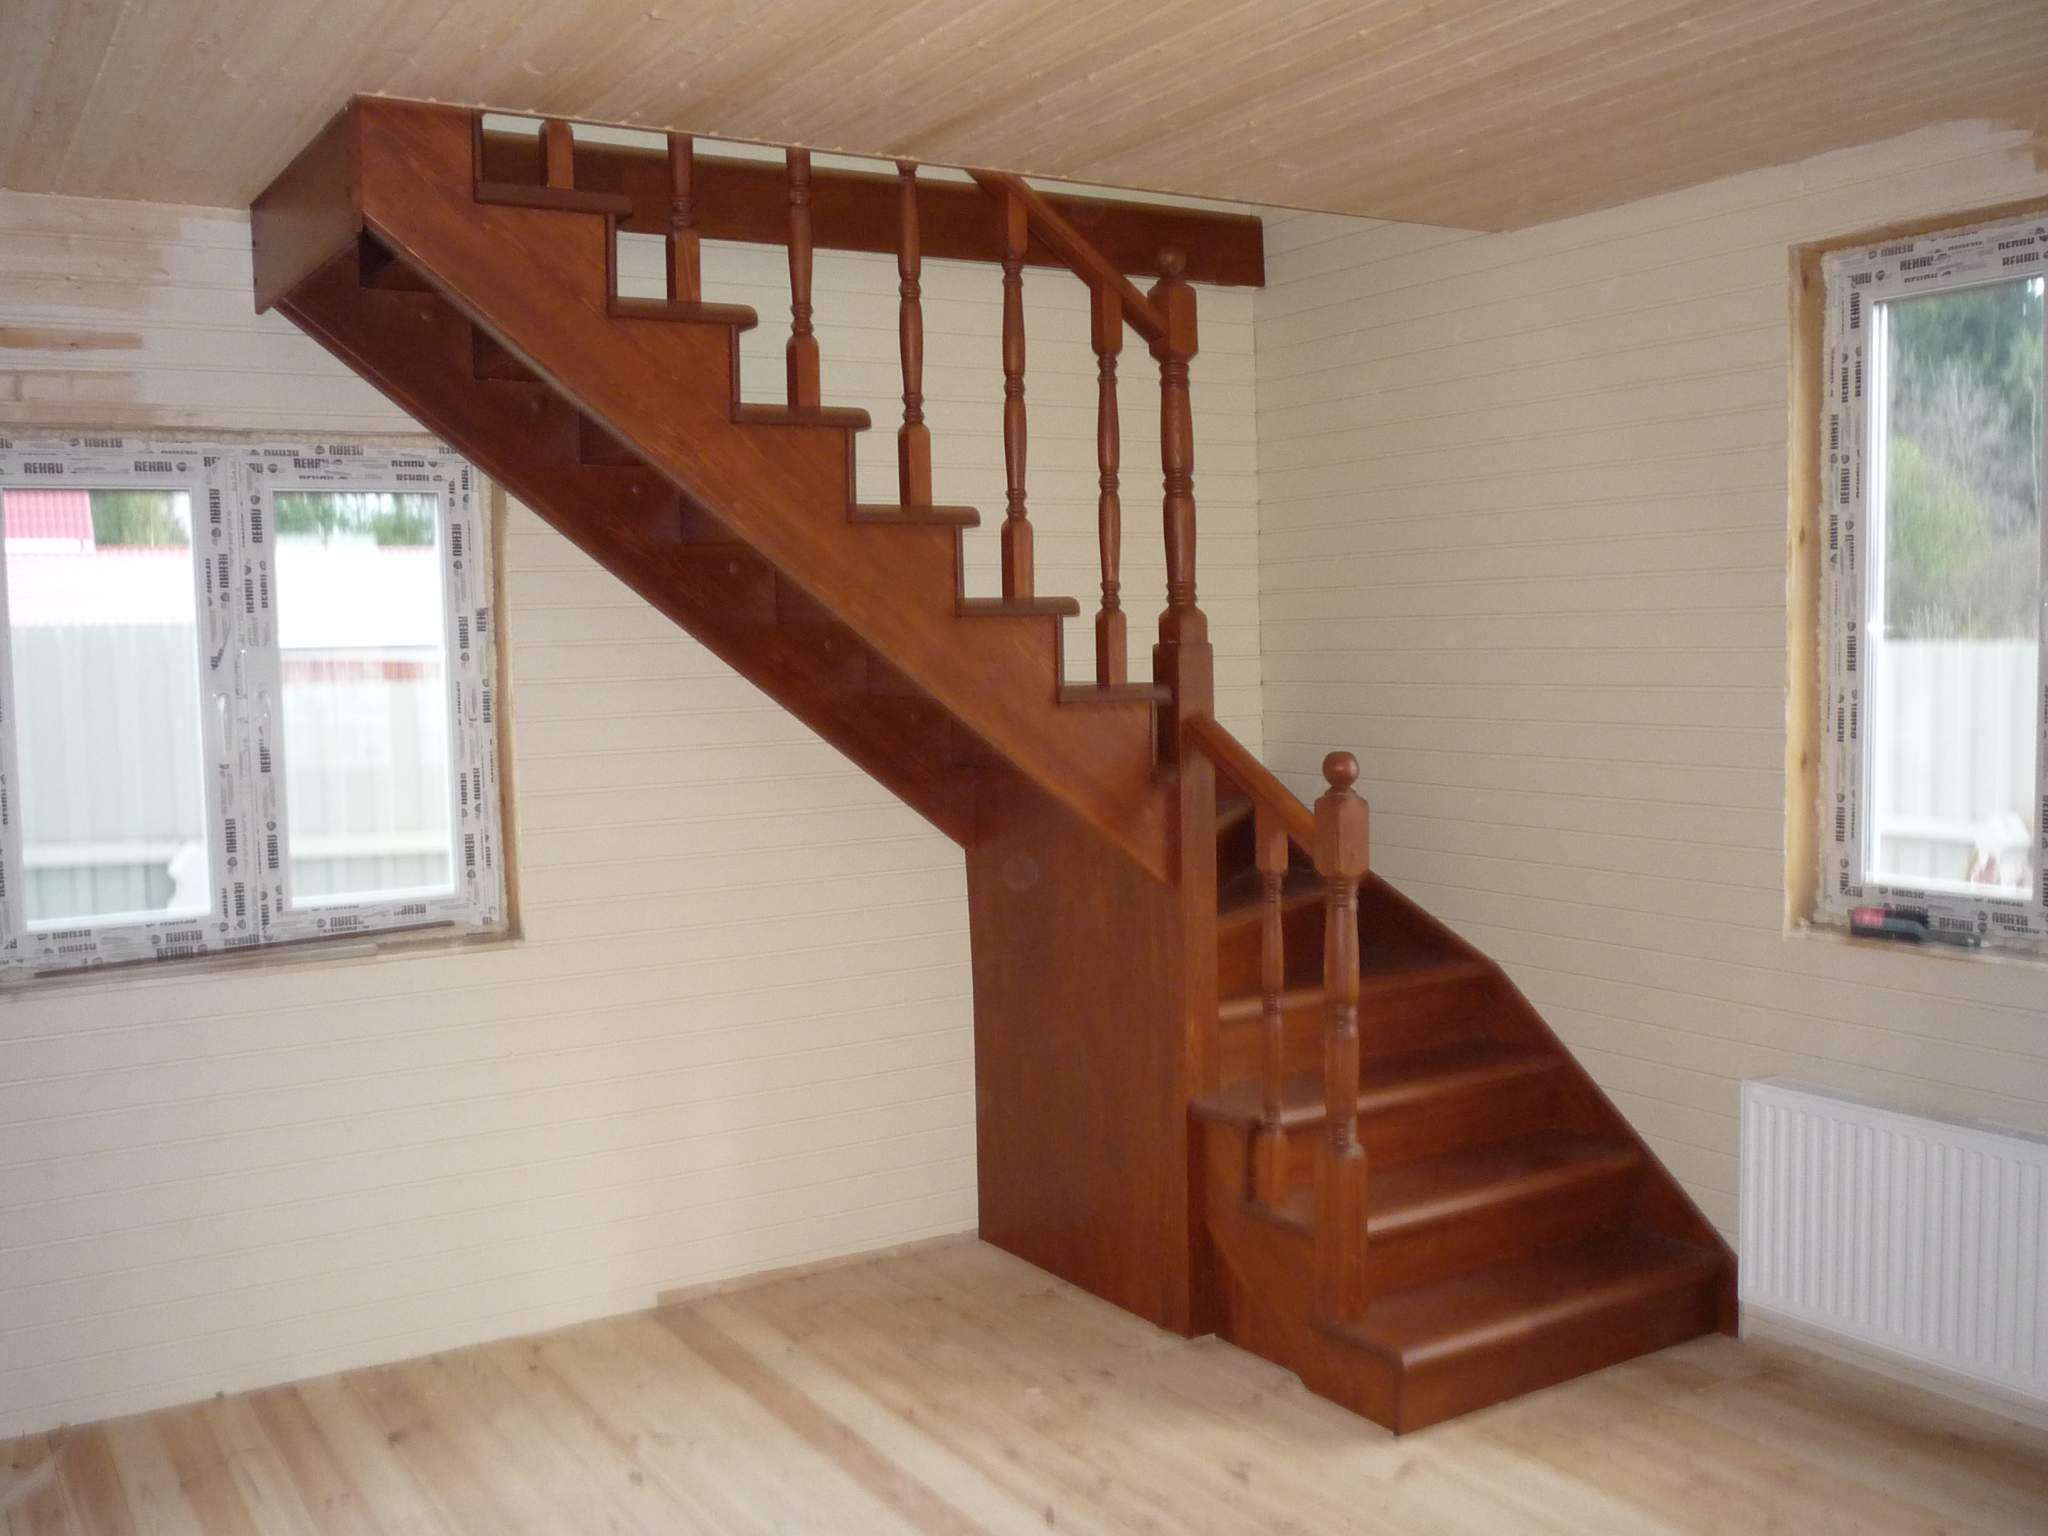 Строим деревянную лестницу на второй этаж дома своими руками